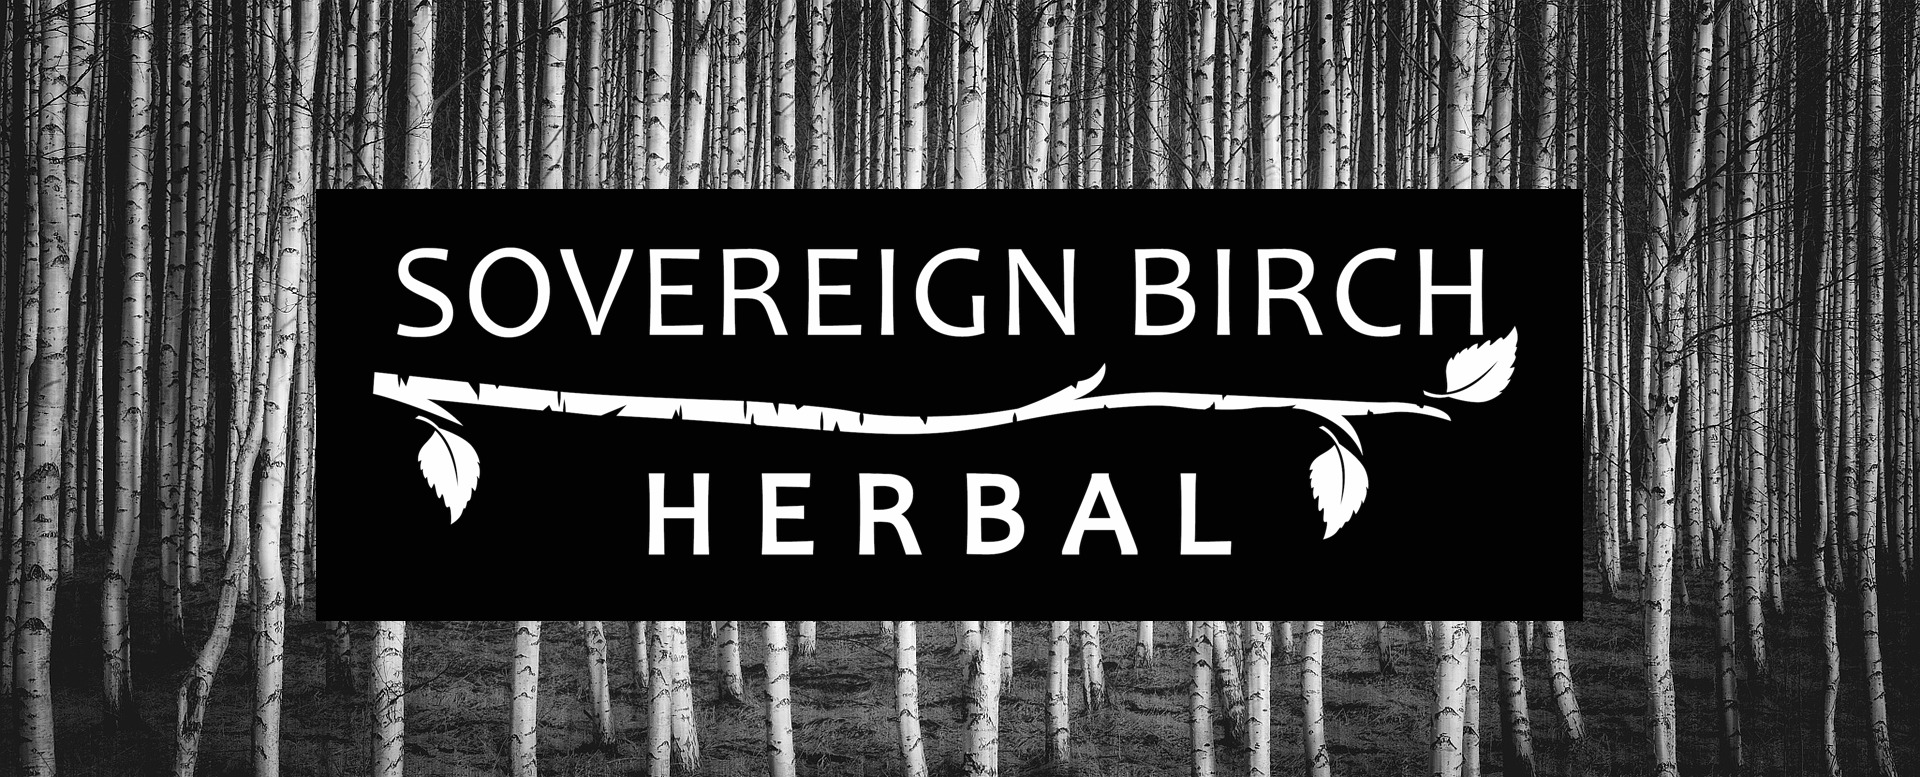 Sovereign Birch Herbal header image